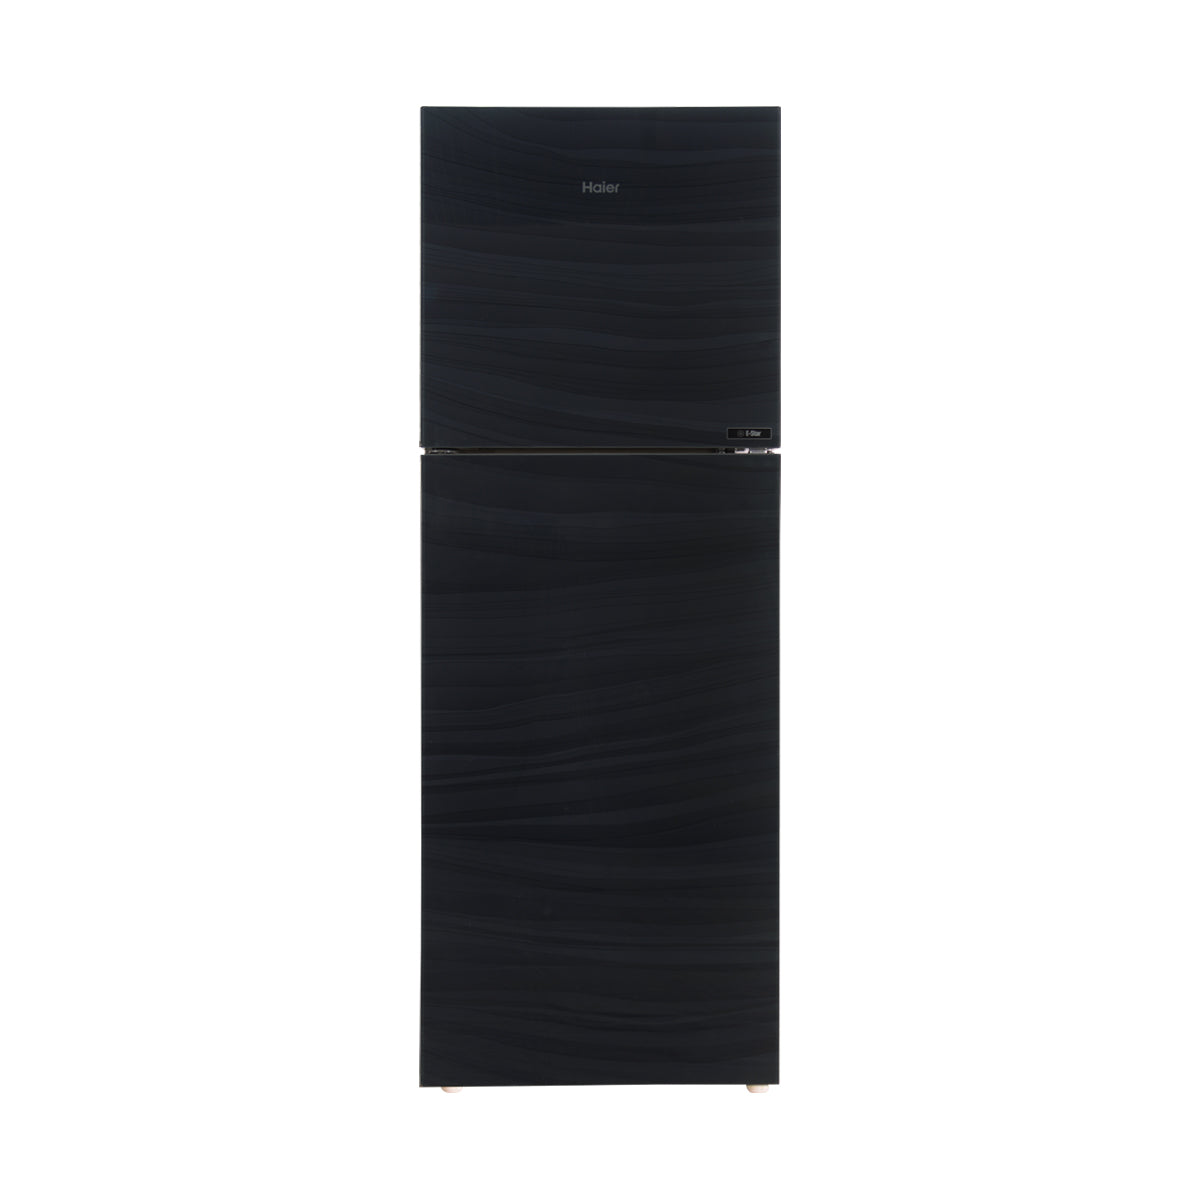 Haier Refrigerator Double Door - HRF-538 EPR/EPB/EPC (Glass Door)